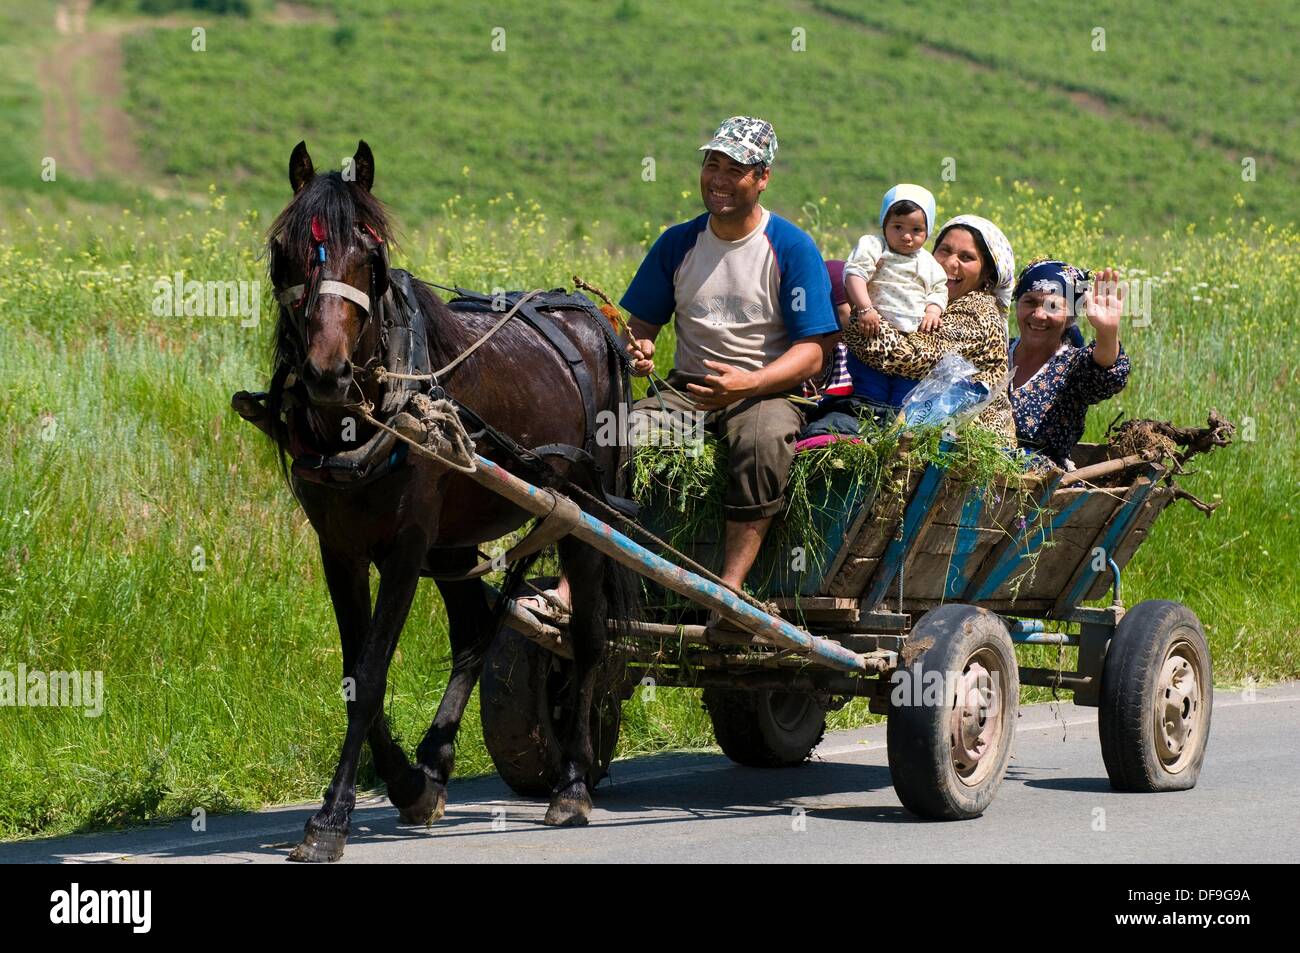 Dobruja, familia de gitanos con carro de caballos tradicional, Rumania Foto de stock